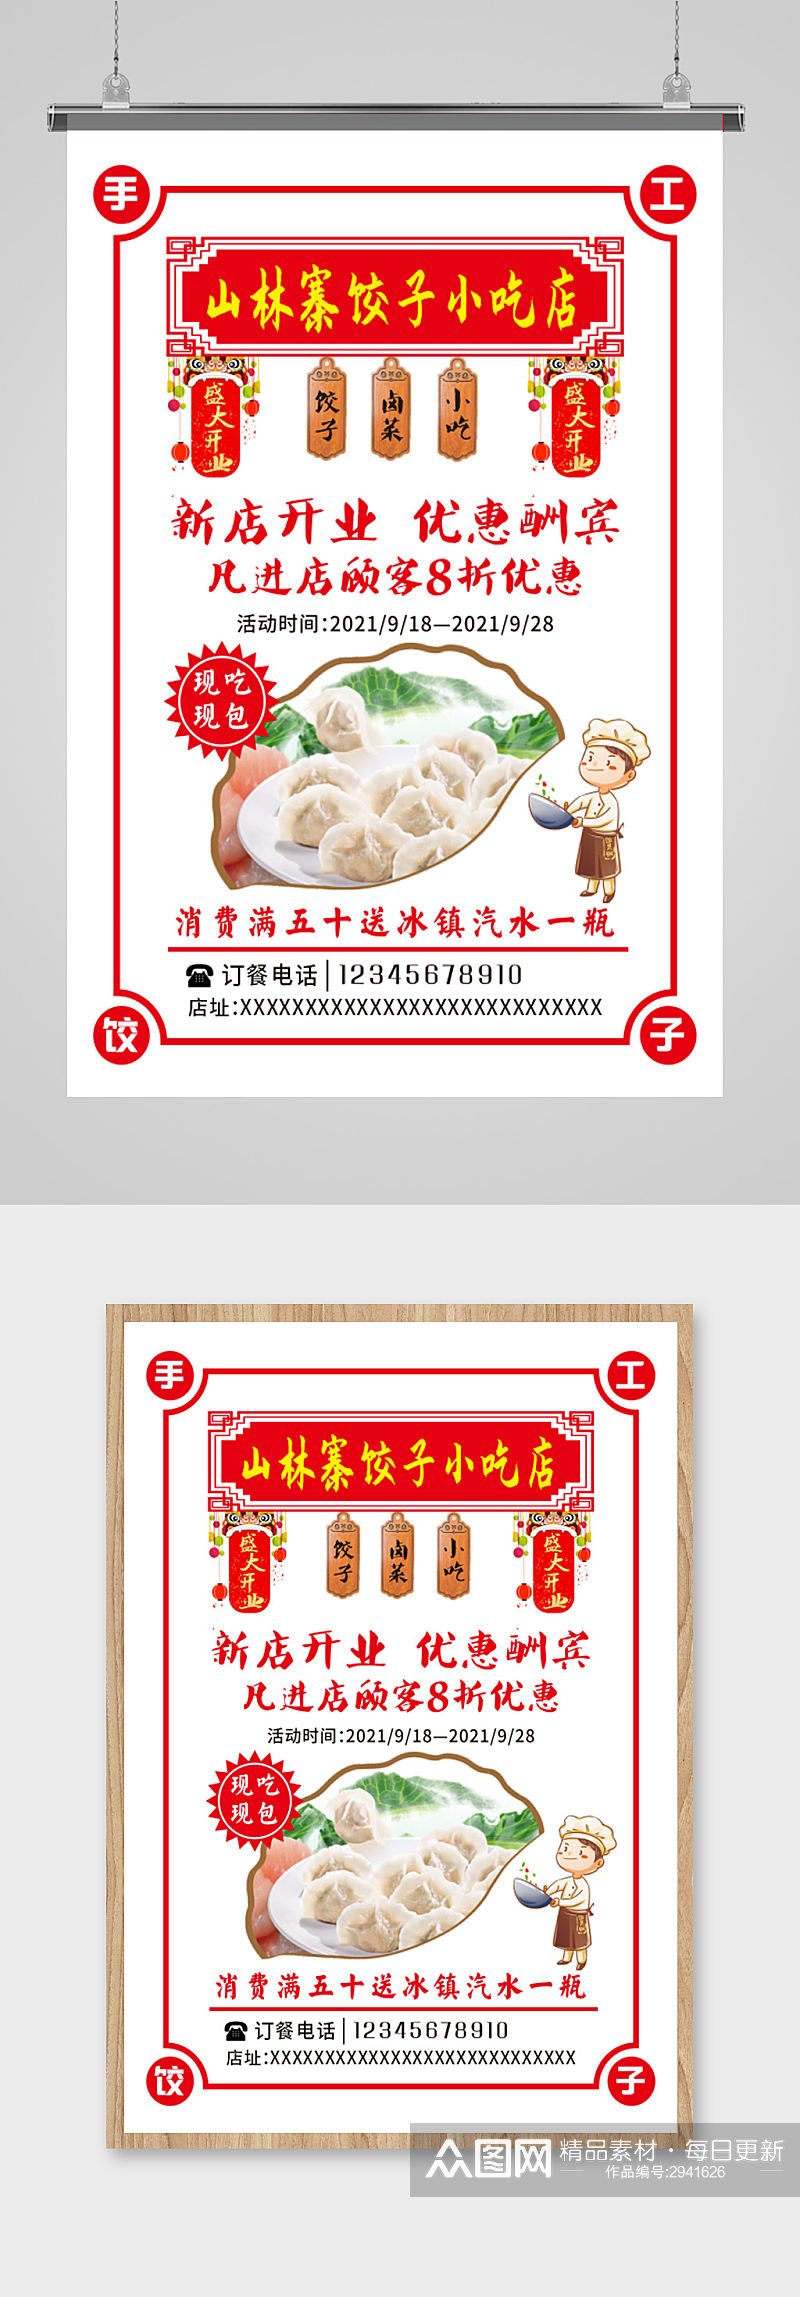 饺子馆单页海报背景素材